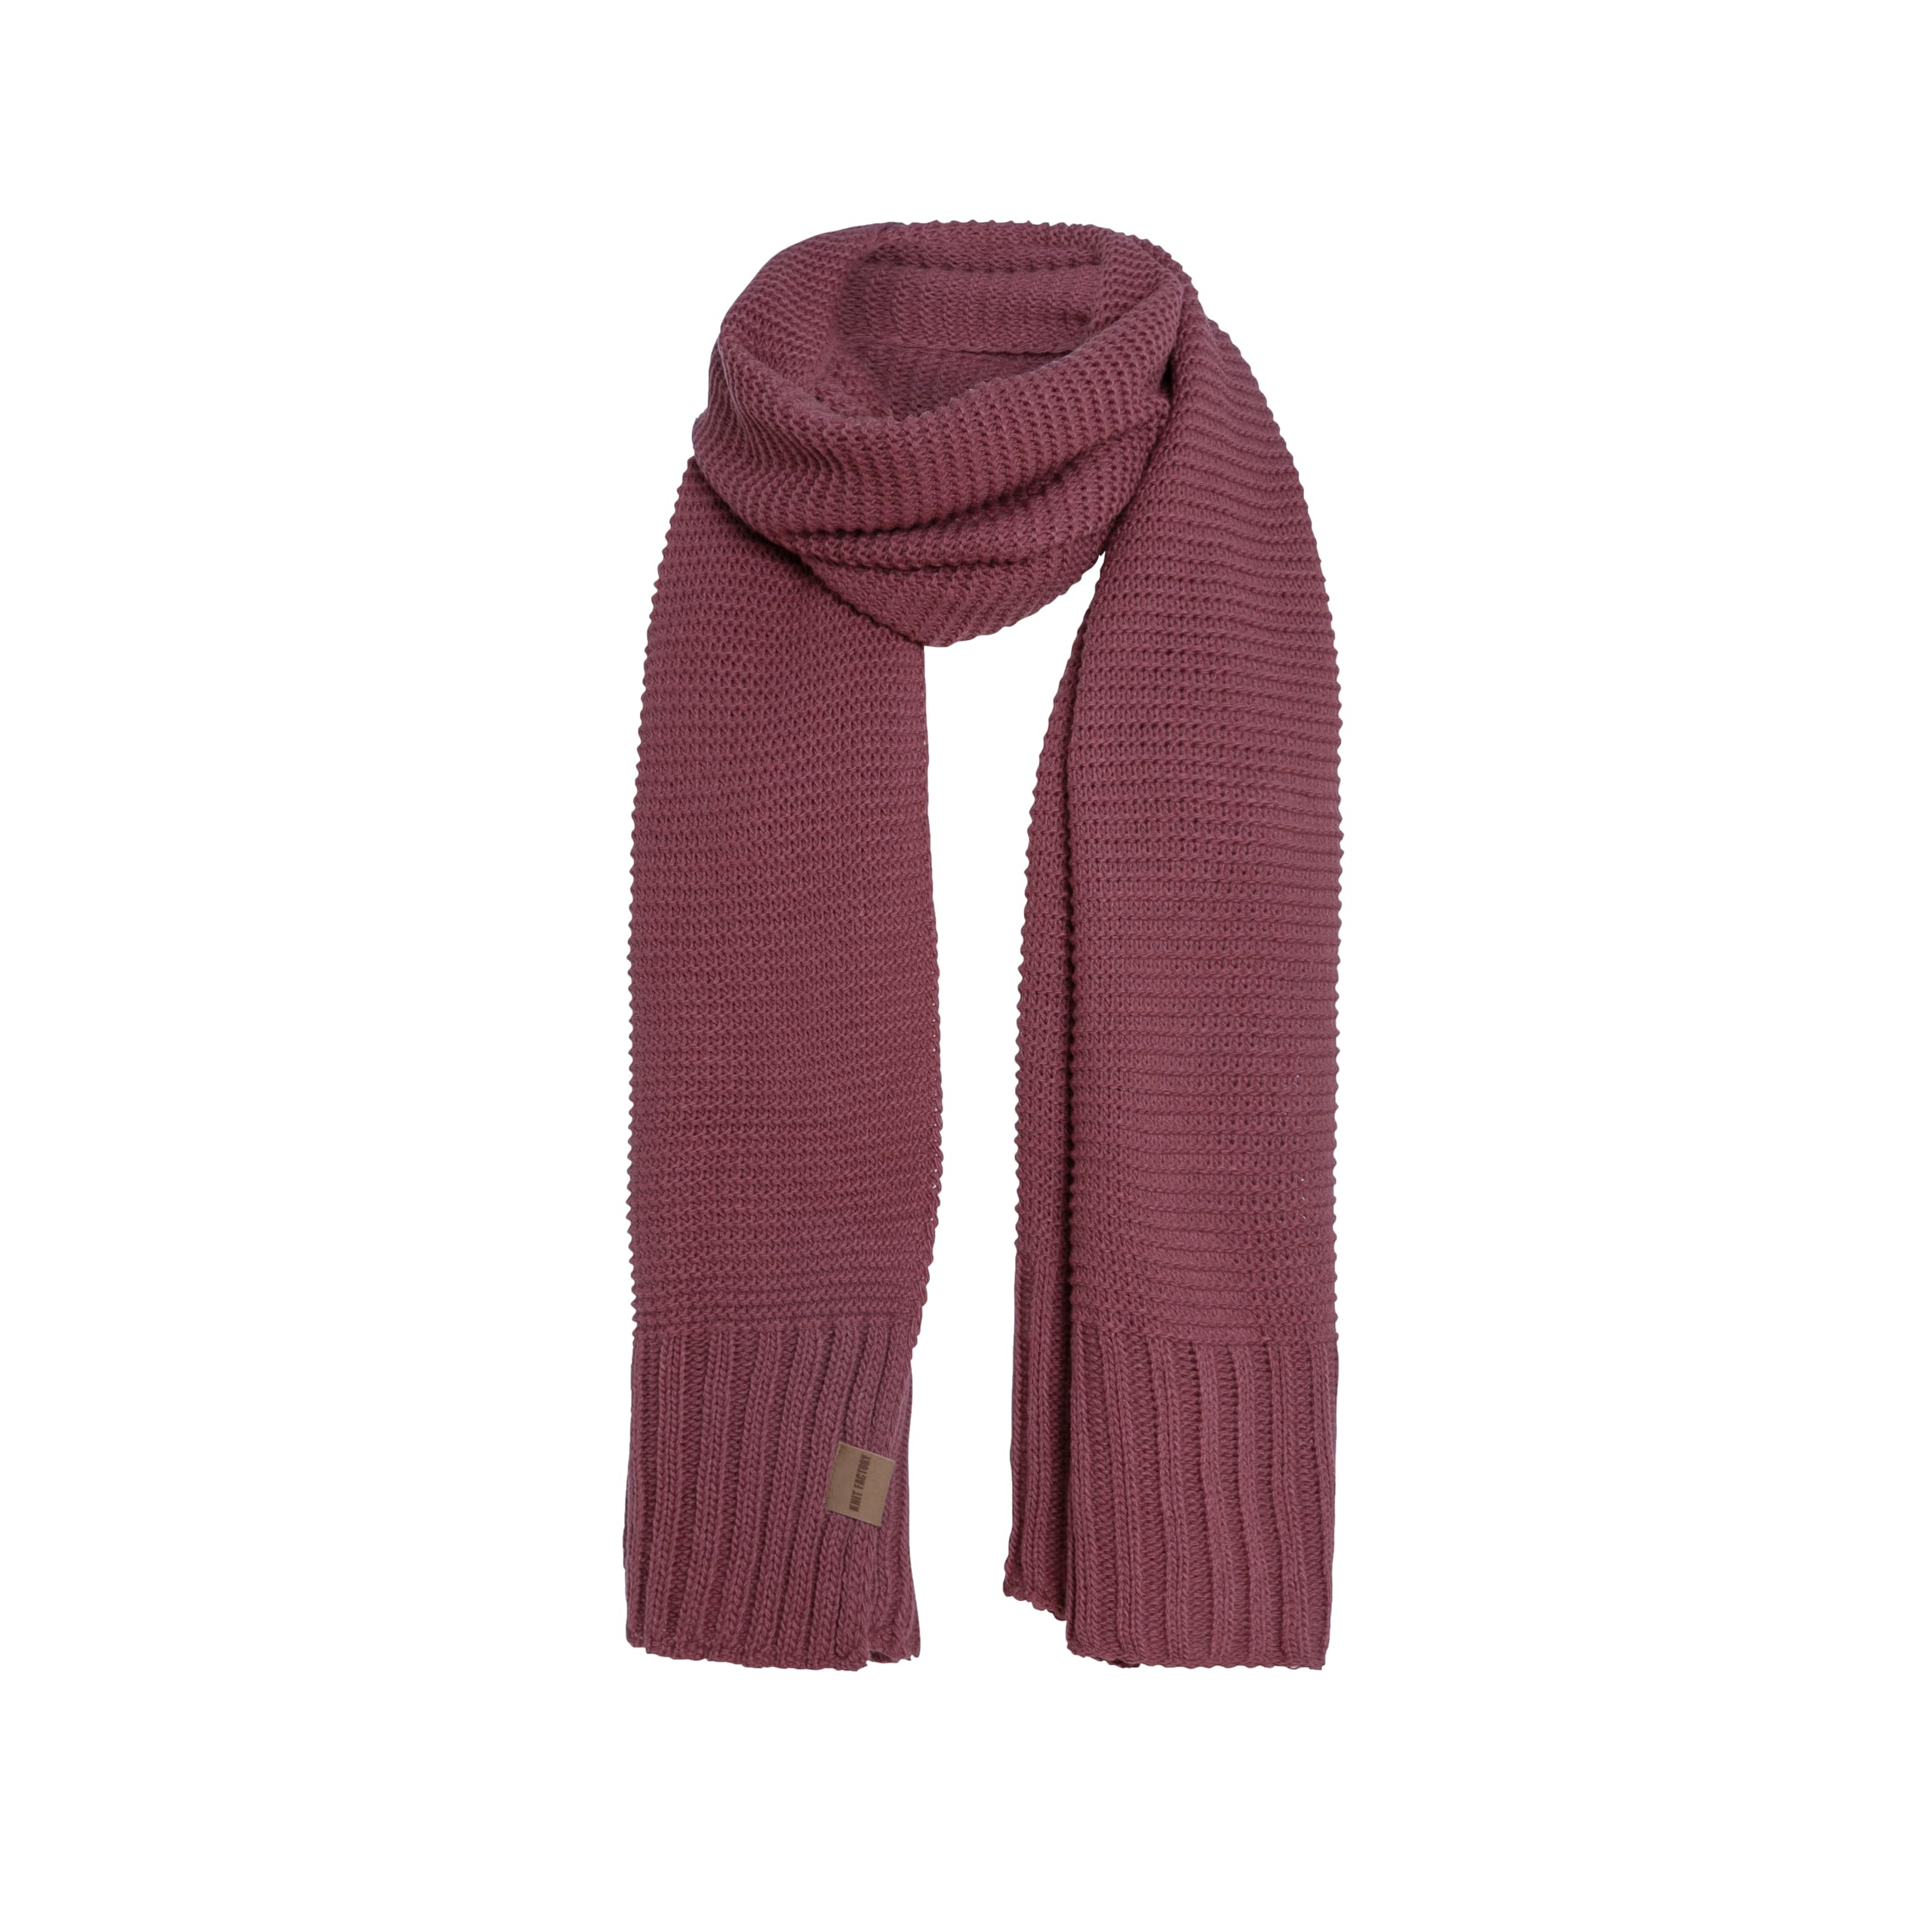 Knit Factory - Jamie Schal - gewalkter Wolle Strickschal - 2m lange Winterschal für Damen und Herren - Stone Red - 200x45 cm